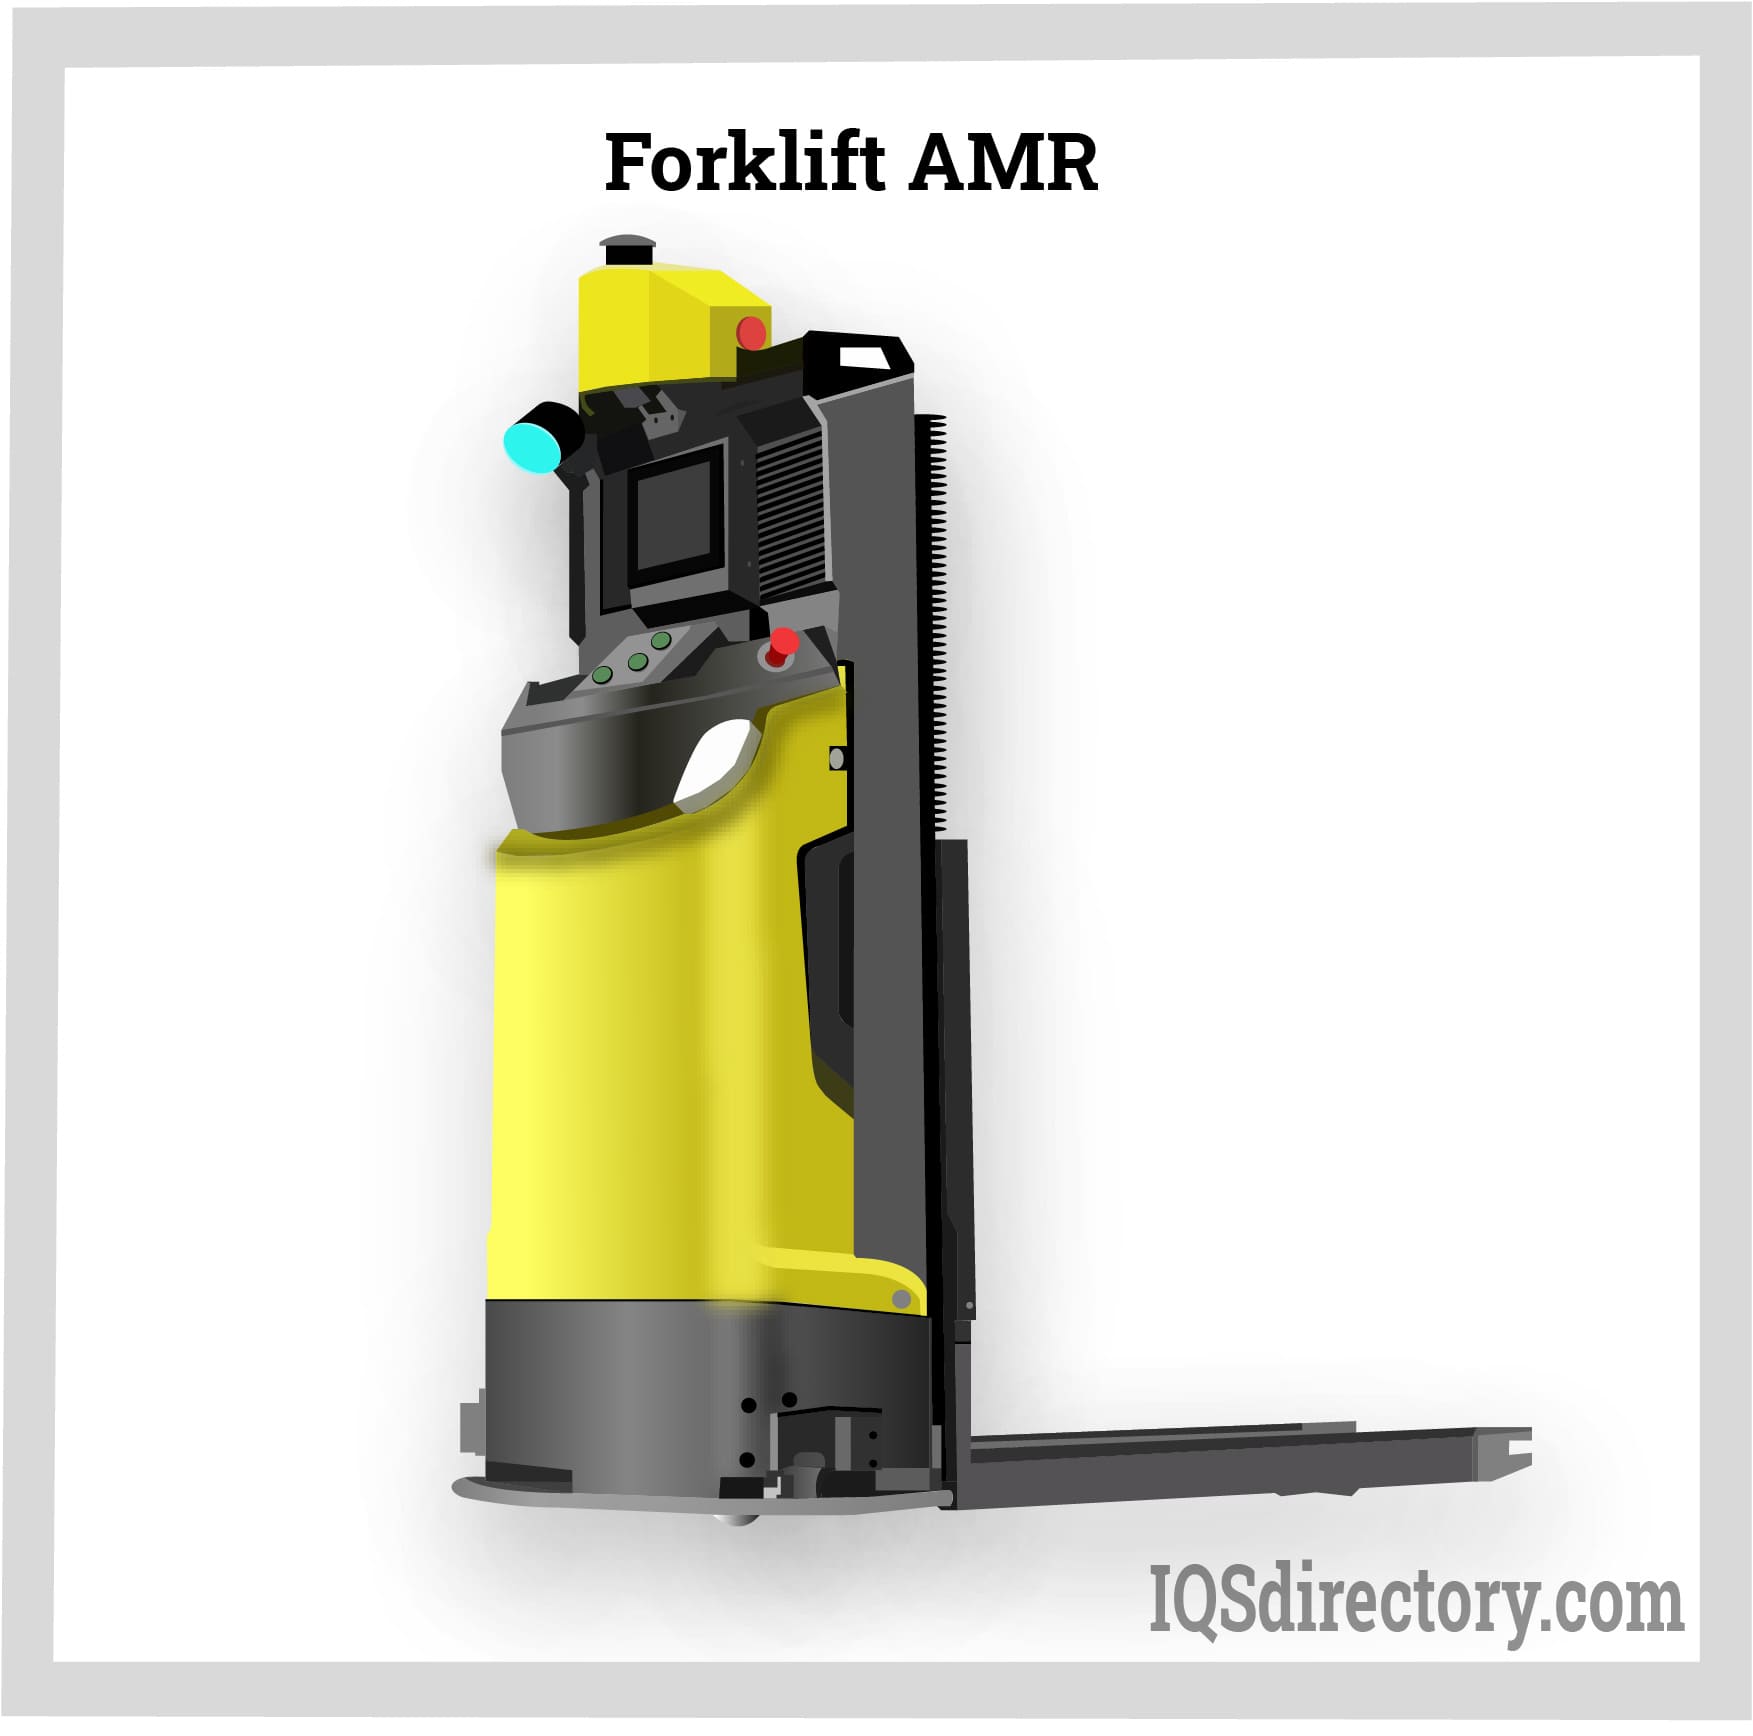 Forklift AMR